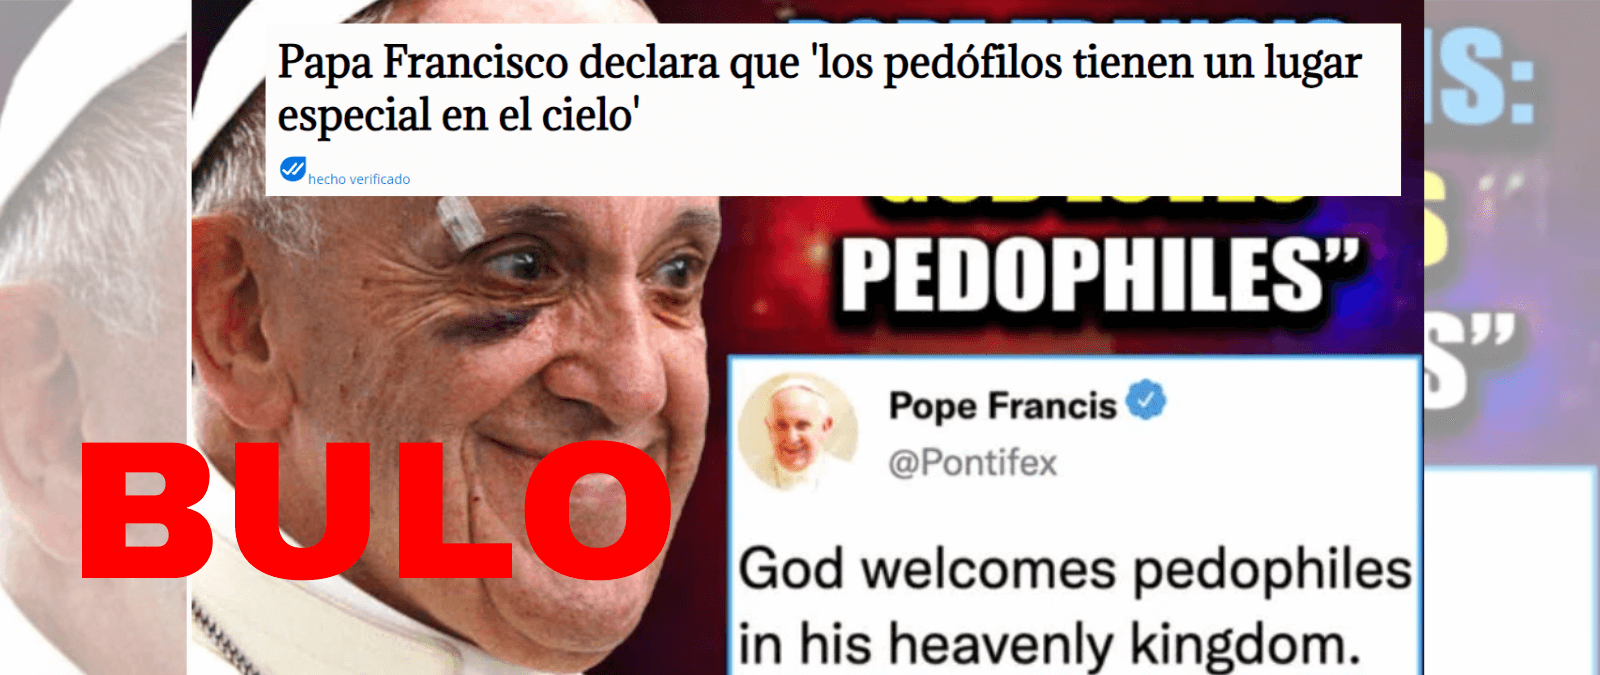 No, el papa Francisco no ha dicho que “los pedófilos tienen un lugar especial en el cielo”